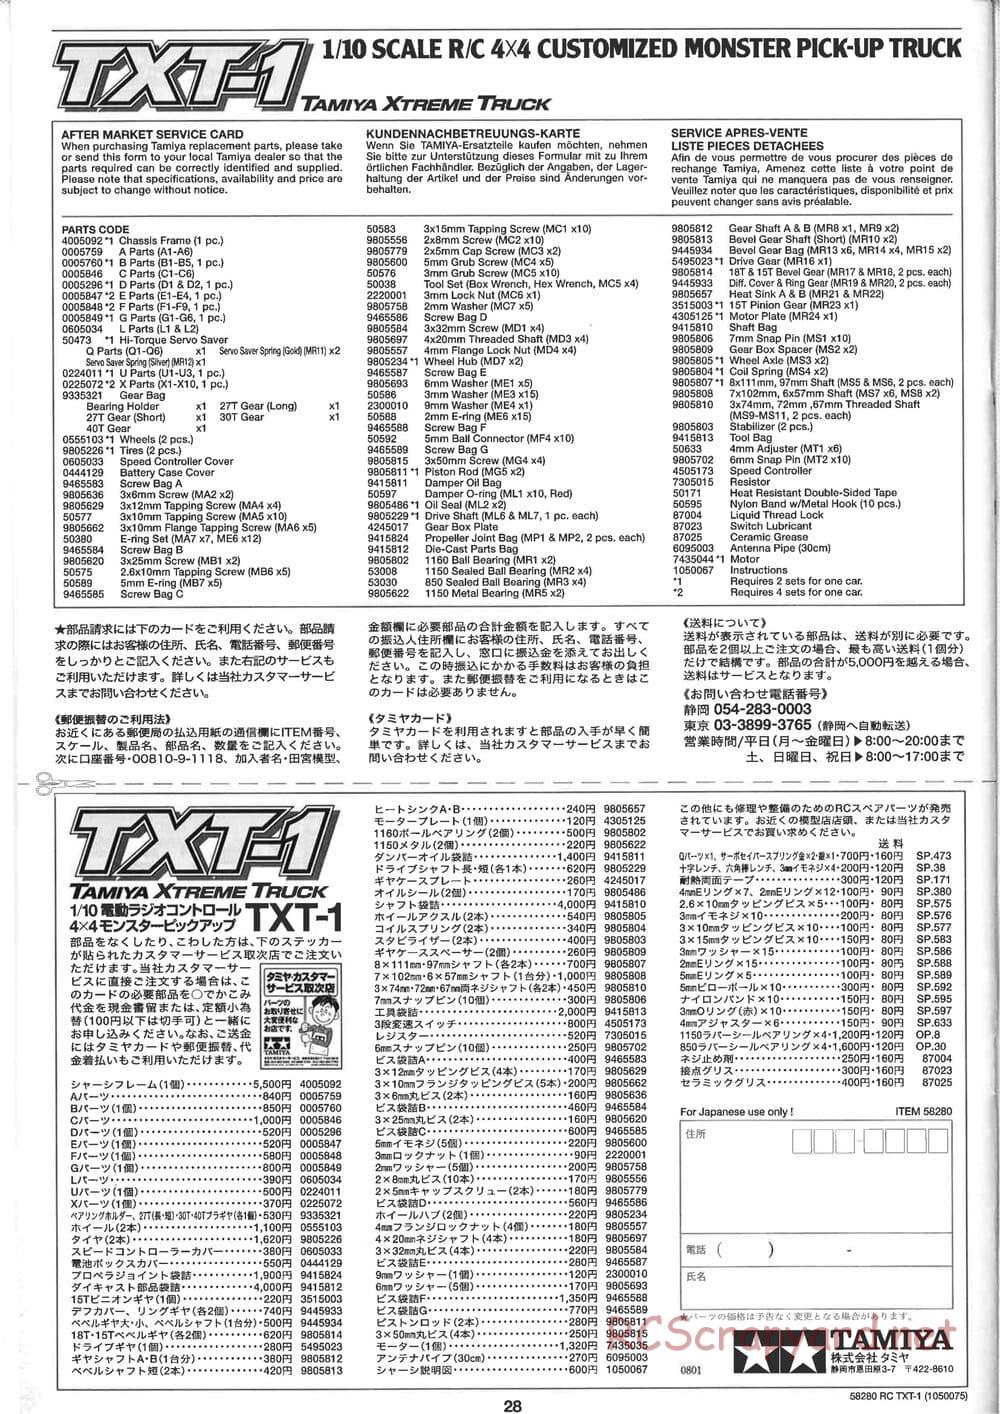 Tamiya - TXT-1 (Tamiya Xtreme Truck) Chassis - Manual - Page 28